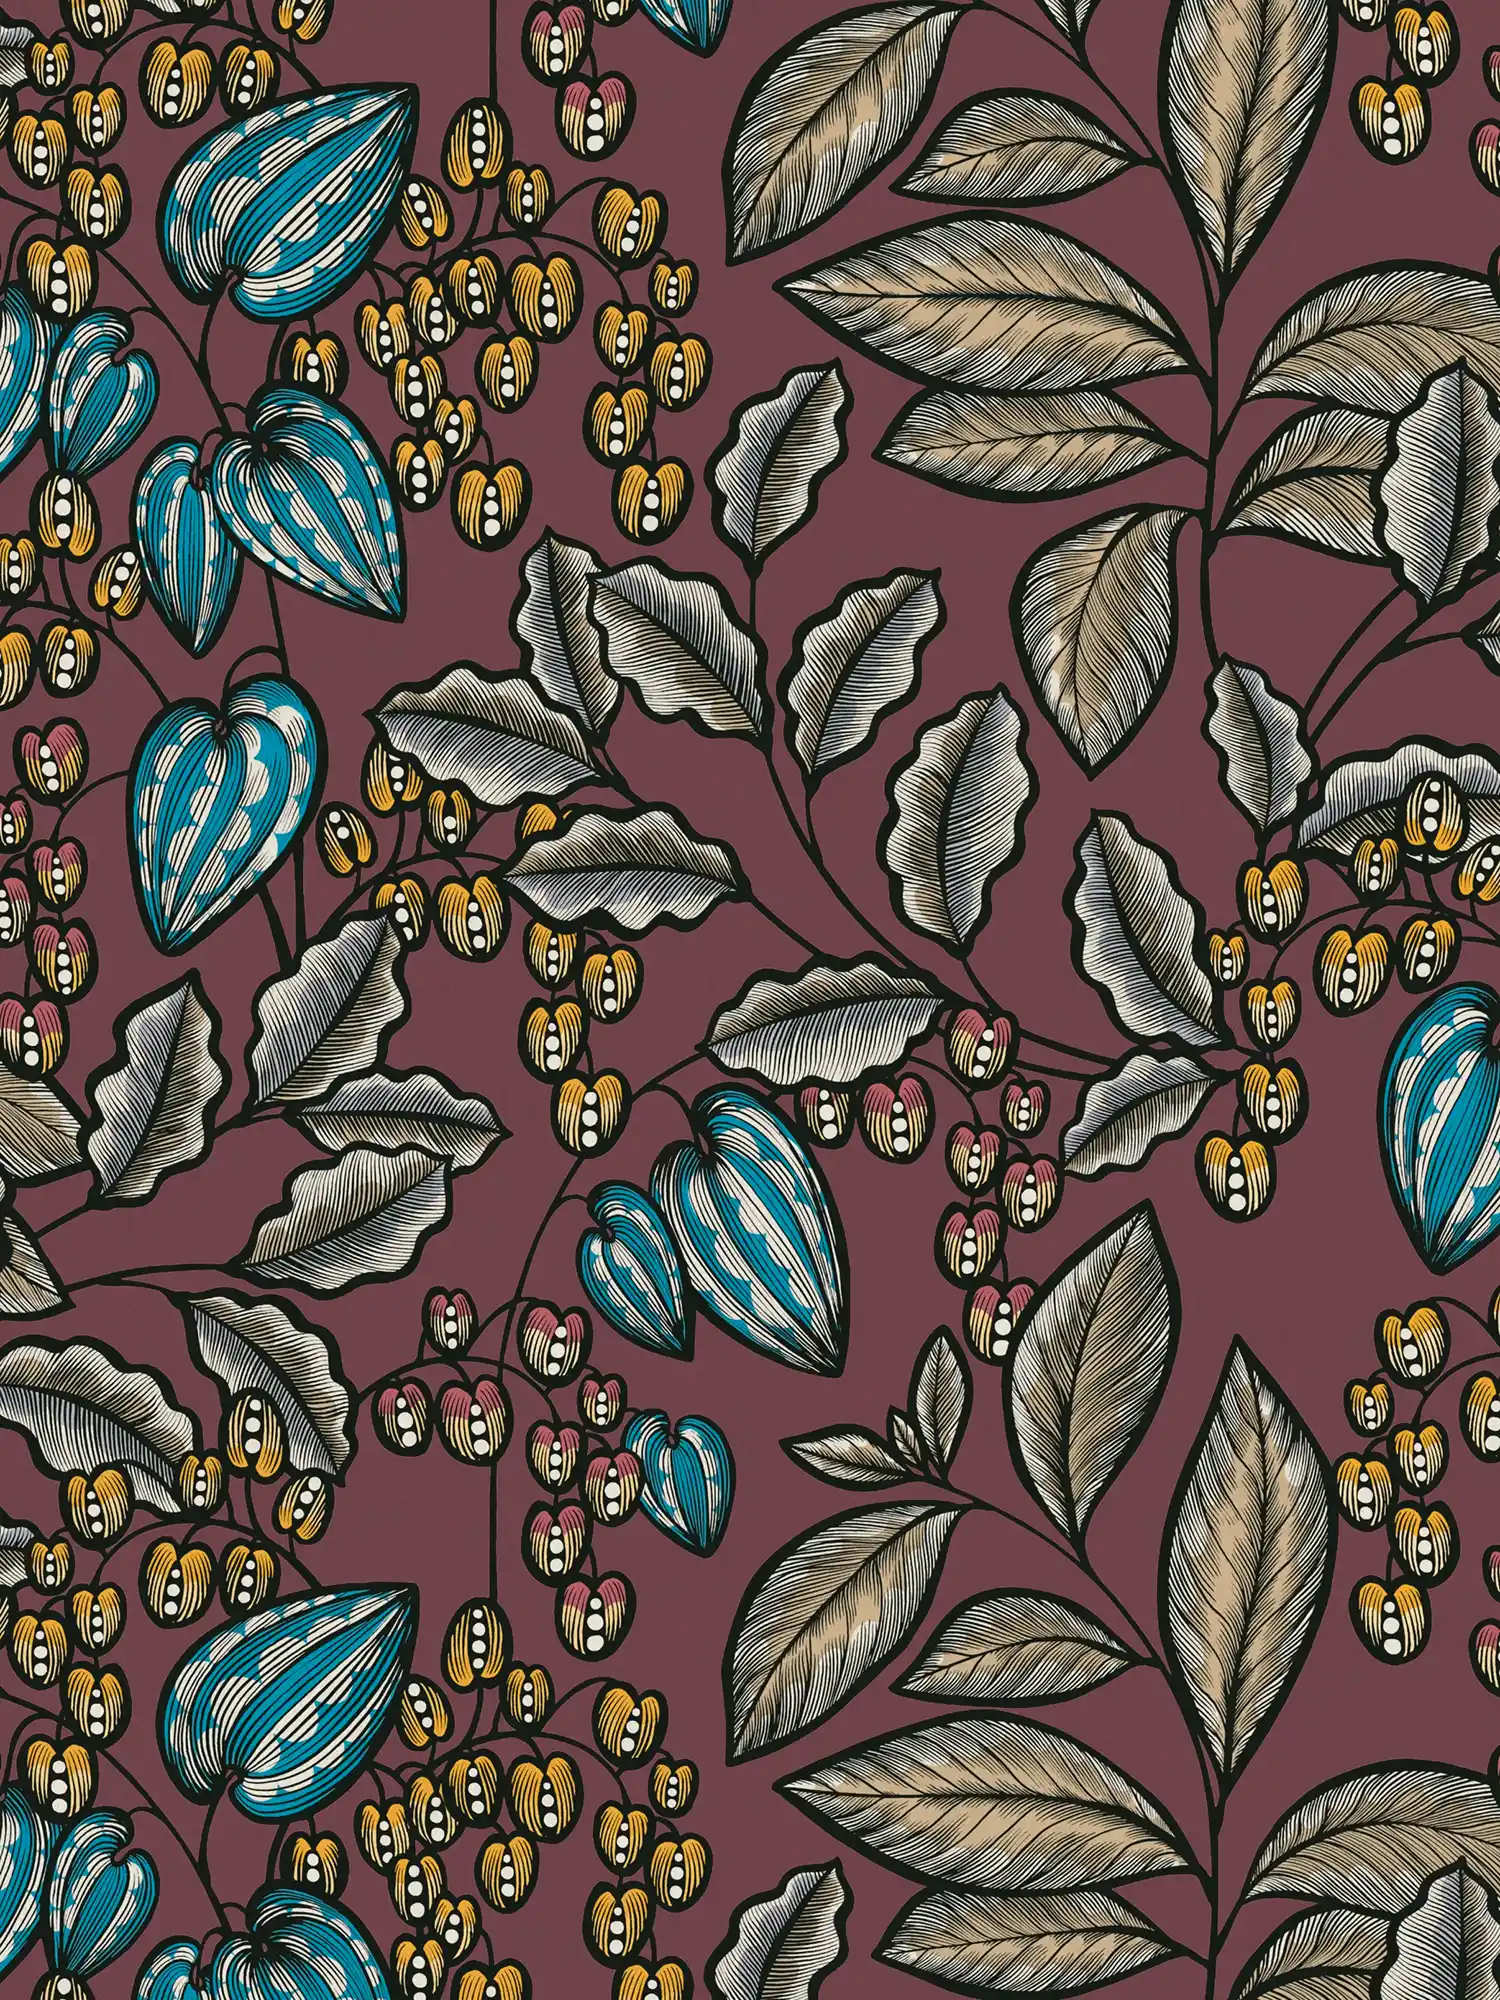         Bloemenbehang paars met bladerenprint in Scandinavische stijl
    